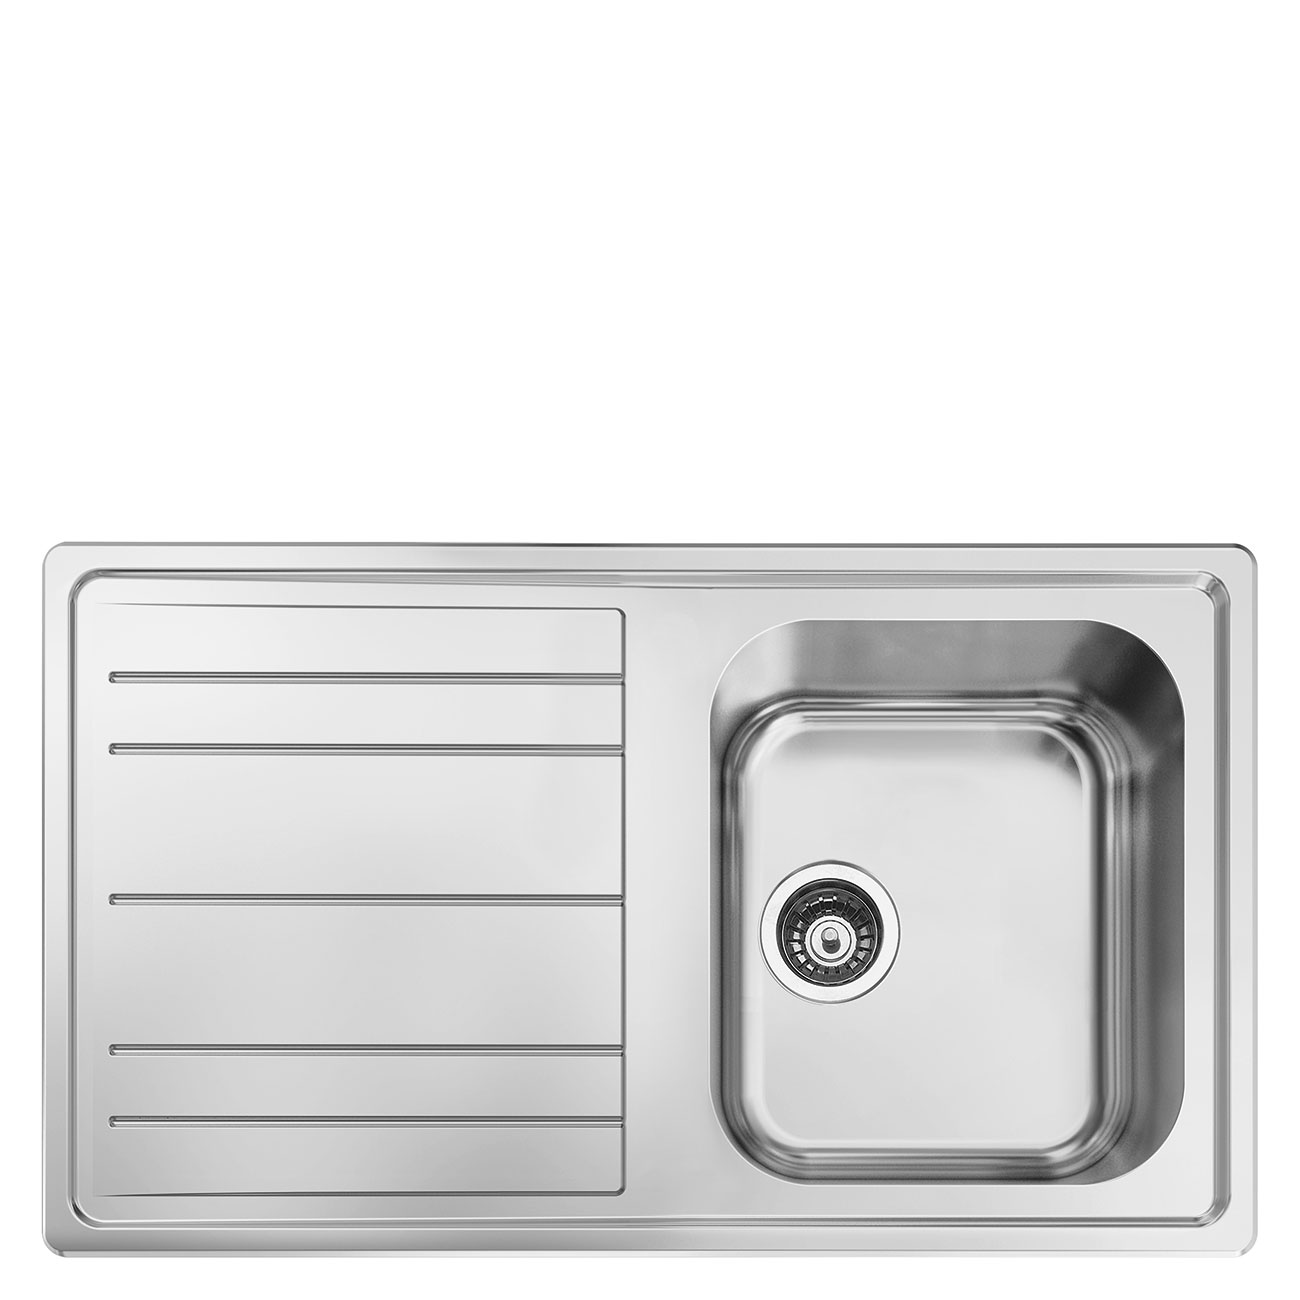 Kitchen sink - Smeg_2